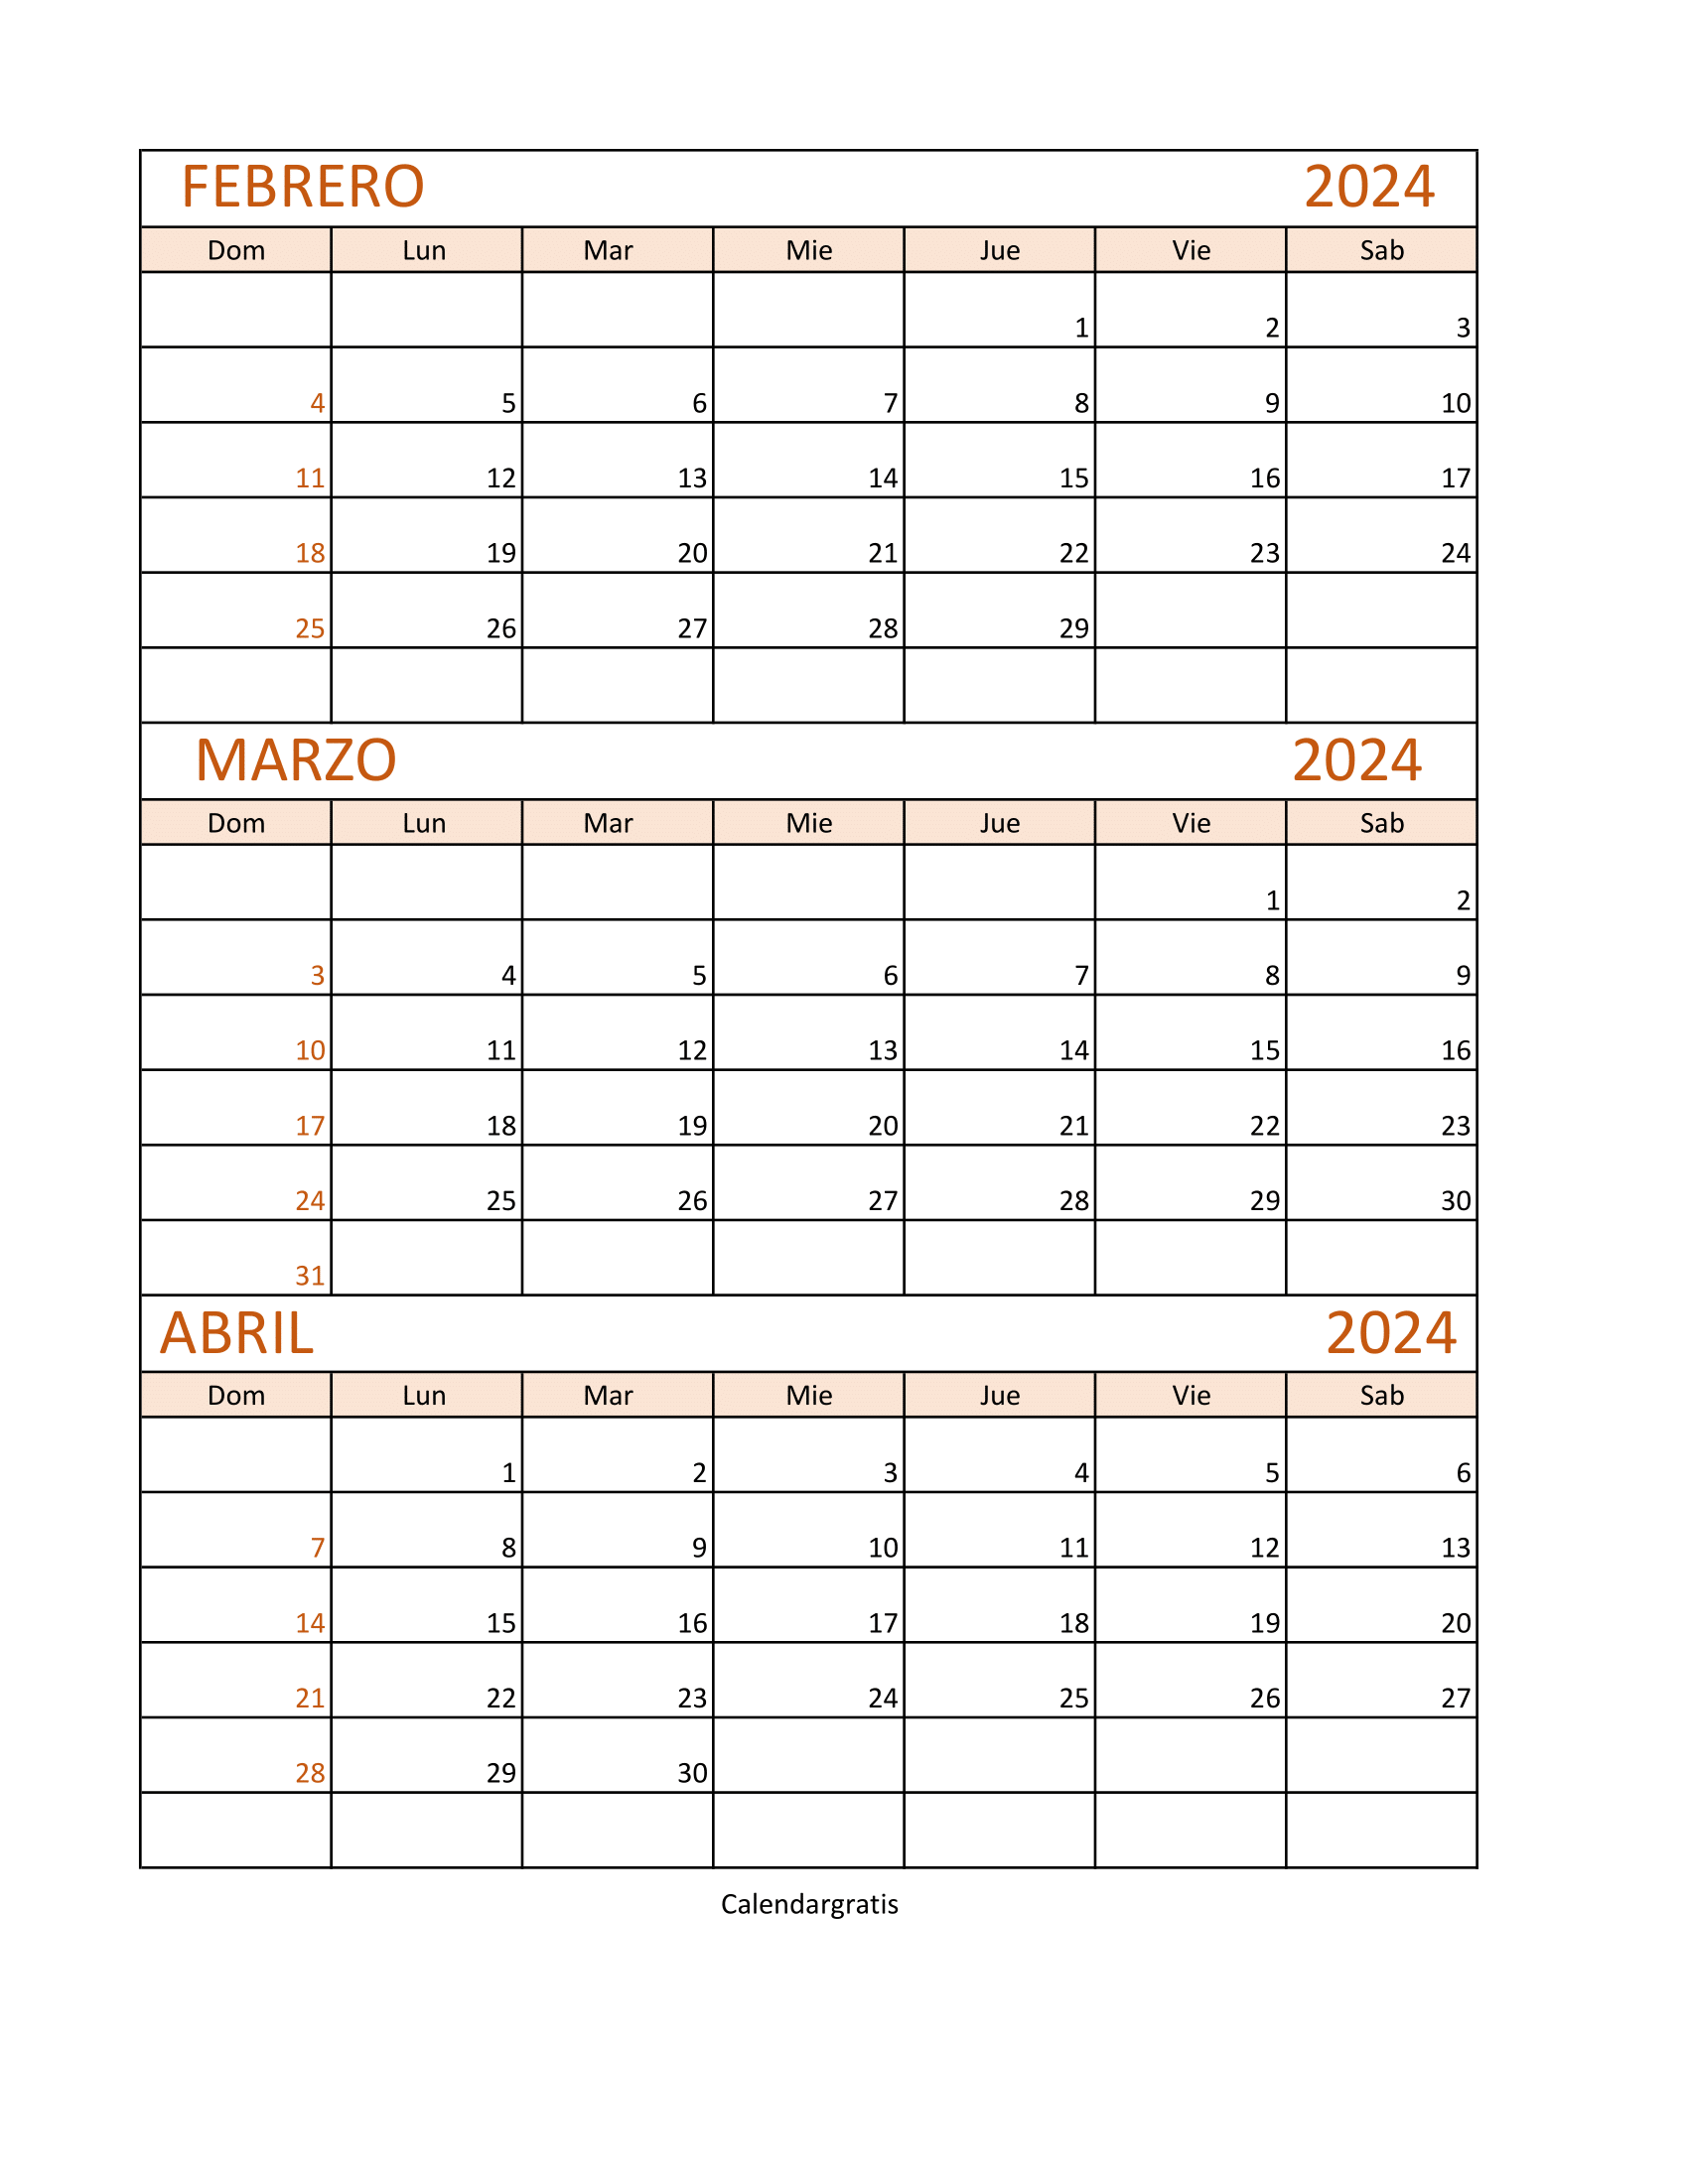 Calendario febrero marzo abril 2024